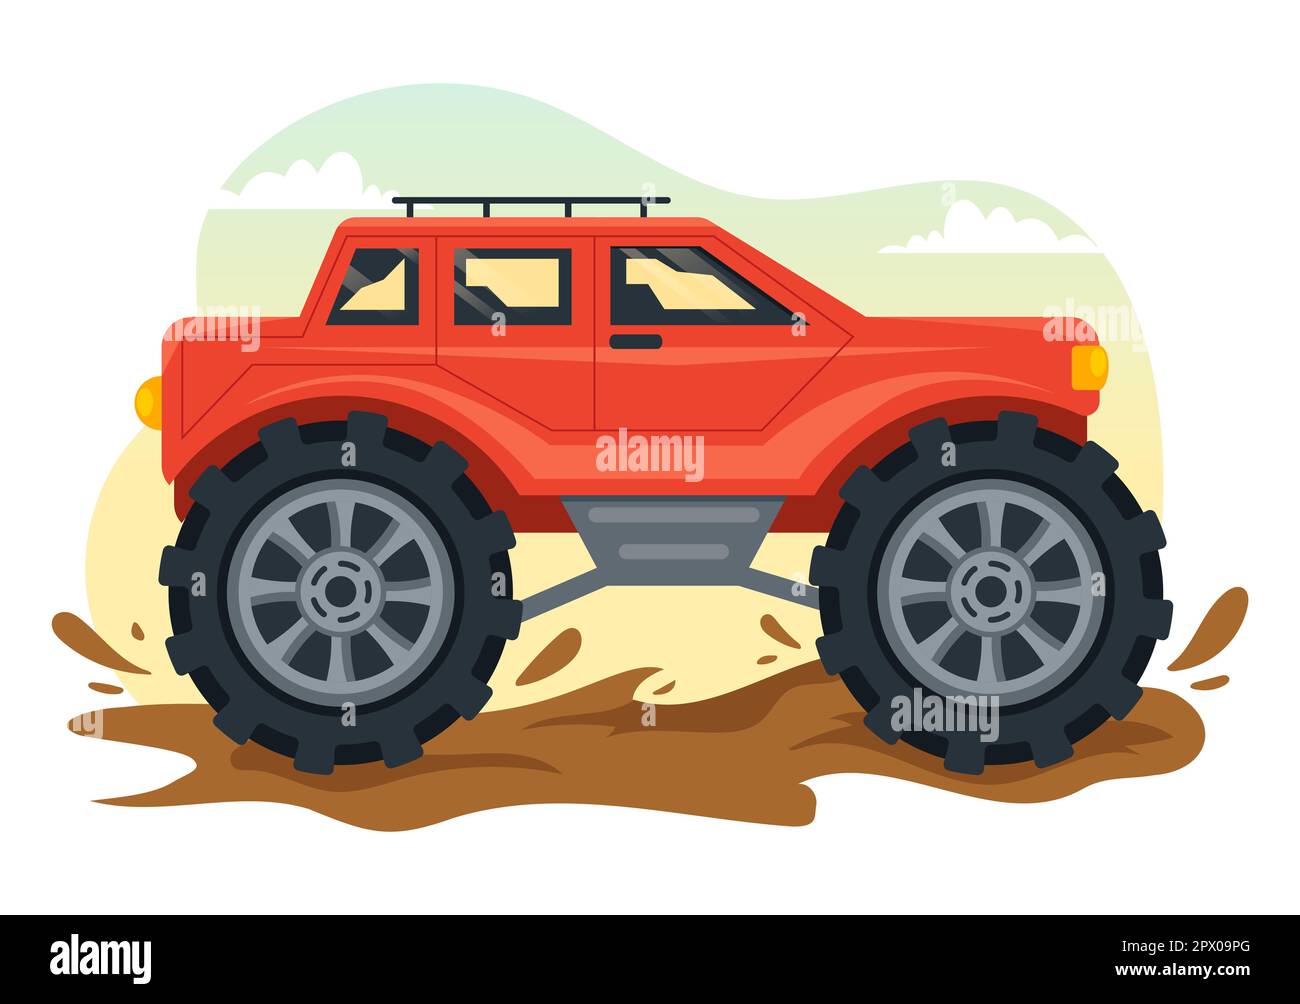 Illustration tout-terrain avec une voiture Jeep ou un vus pour traverser le terrain rocheux, les rivières et le sable dans des modèles tirés à la main de dessin de dessin de dessin animé Banque D'Images